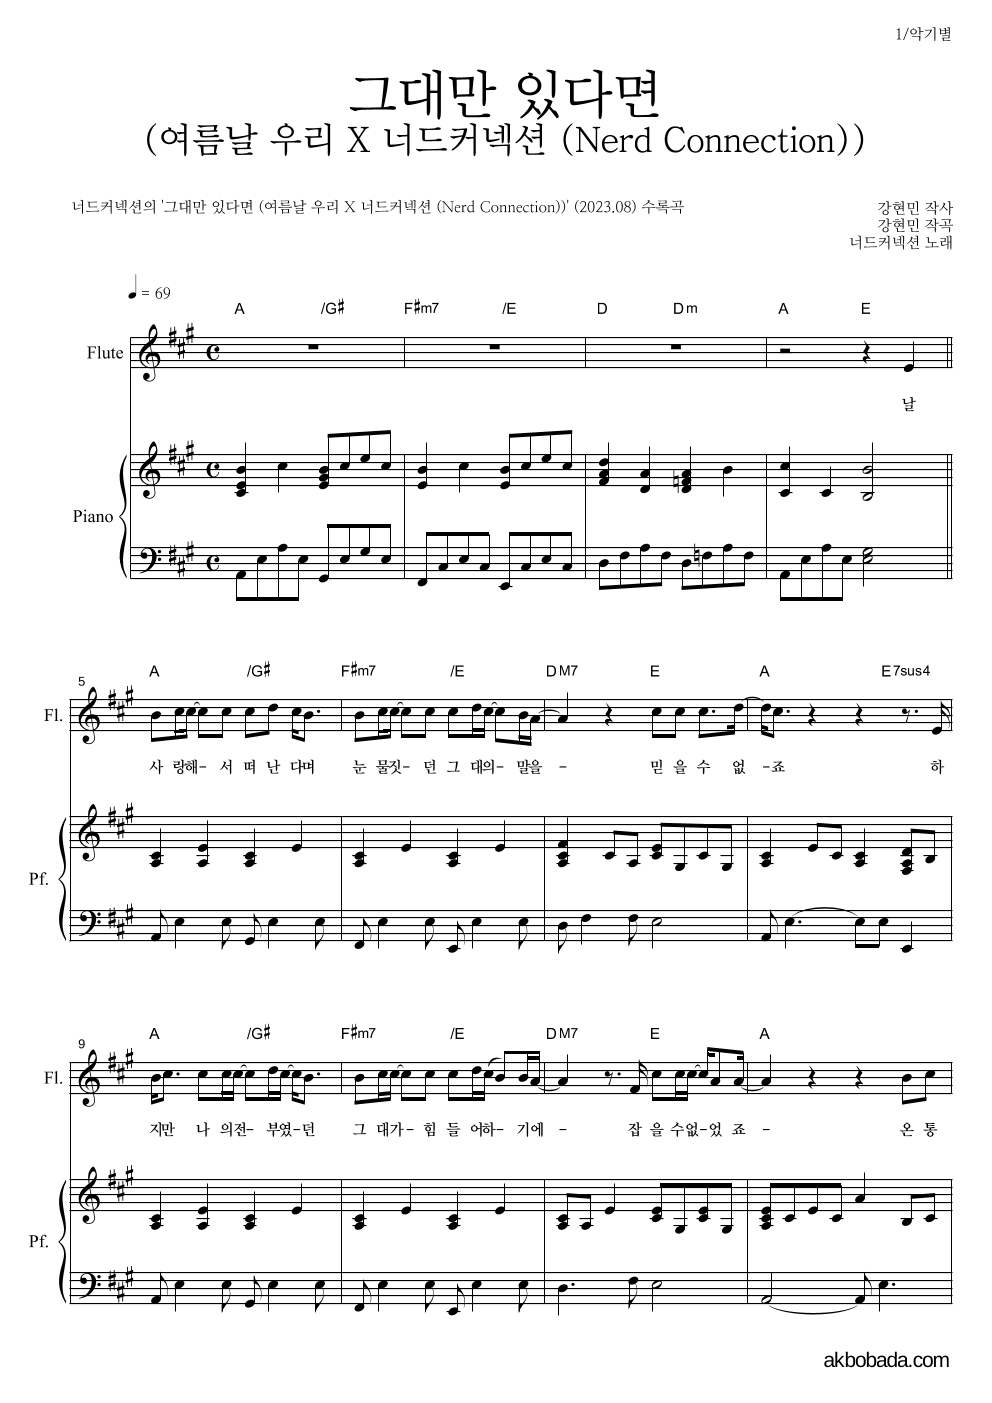 너드커넥션 - 그대만 있다면 (여름날 우리 X 너드커넥션 (Nerd Connection)) 플룻&피아노 악보 